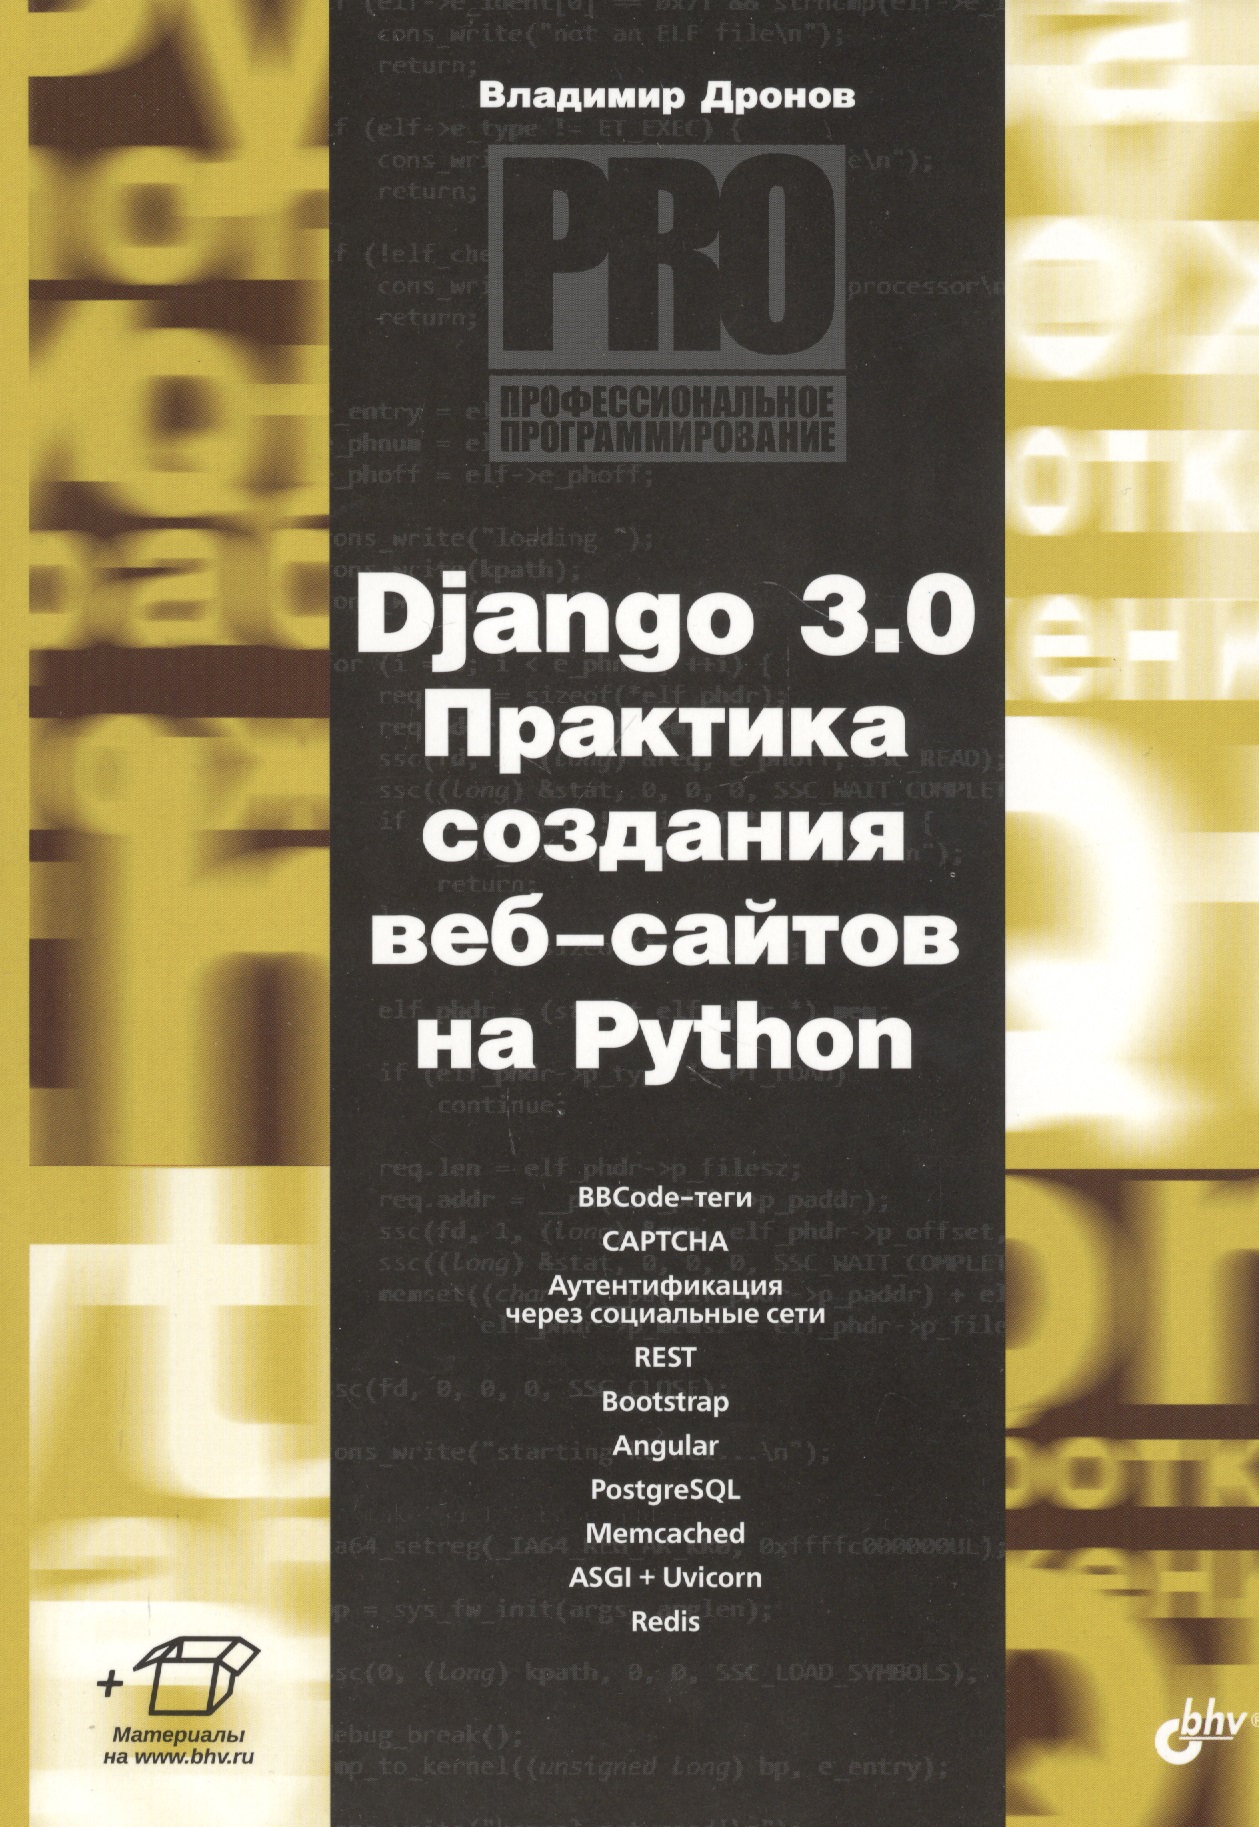 Дронов Владимир Александрович Django 3.0. Практика создания веб-сайтов на Python митчелл райан скраппинг веб сайтов с помощью python